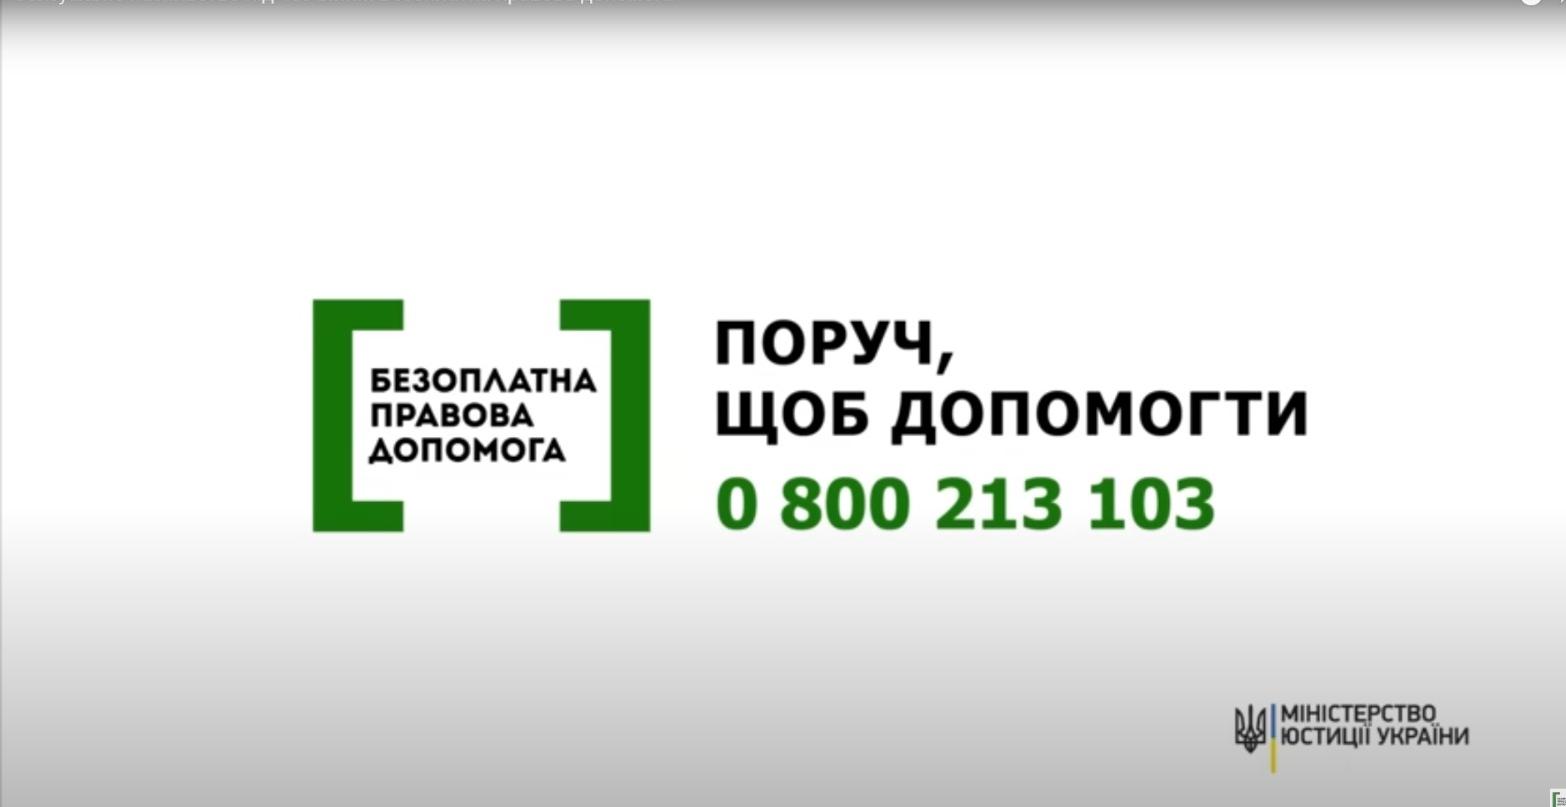 Під егідою Міністерства юстиції України стартувала інформаційна кампанія системи надання безоплатної правової допомоги для постраждалих від сексуального насильства під час війни та домашнього насильства